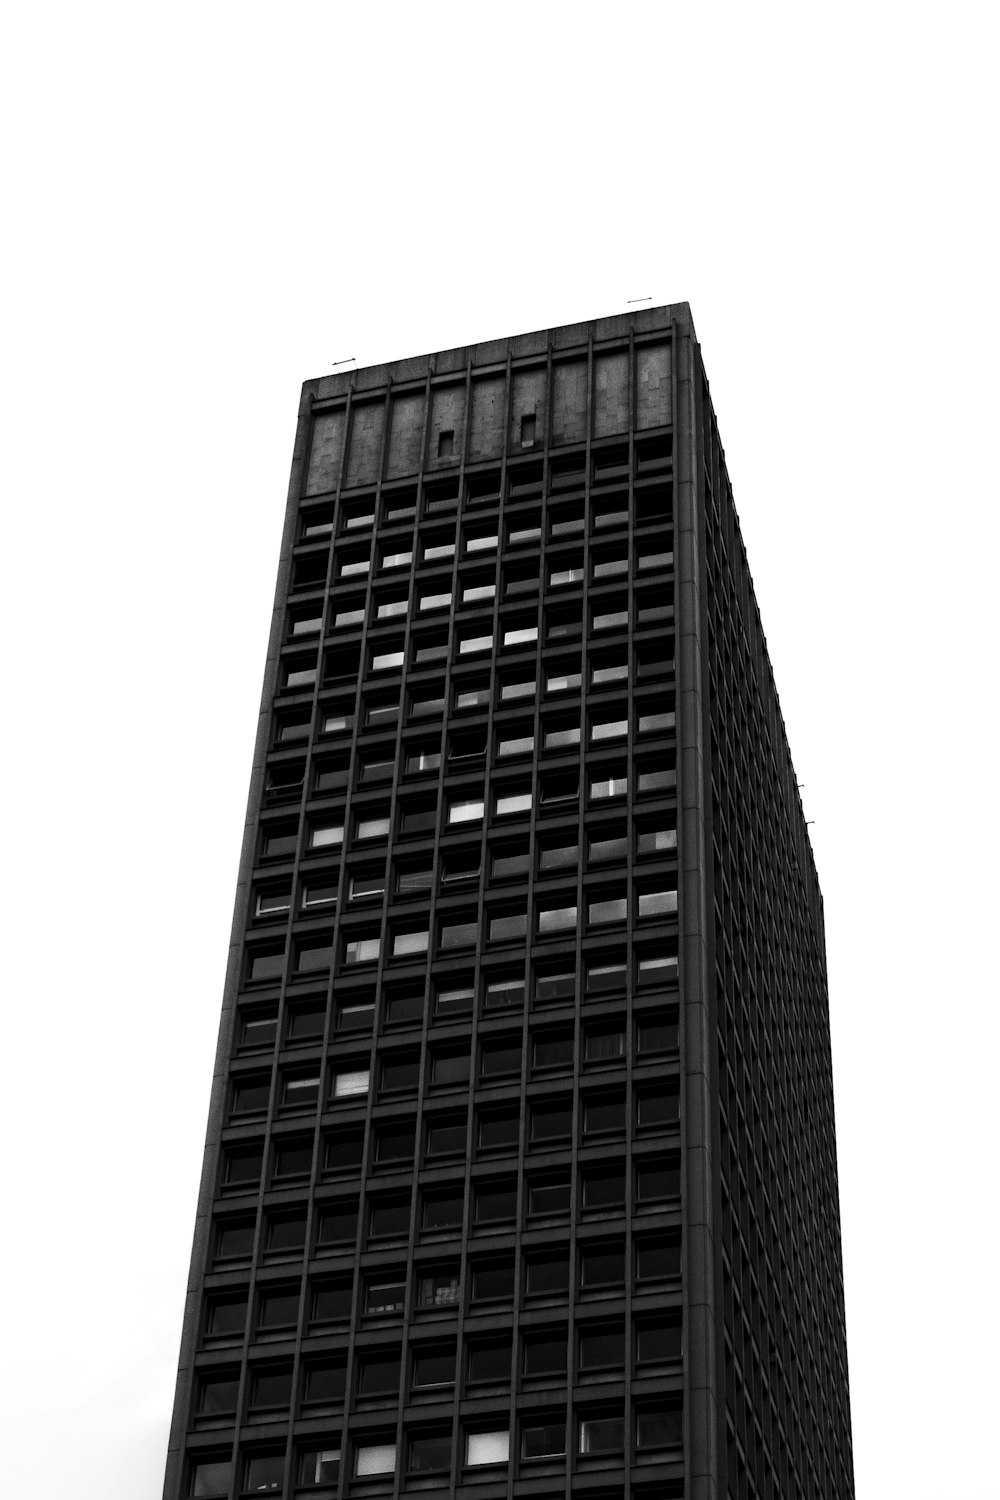 une photo en noir et blanc d’un grand immeuble